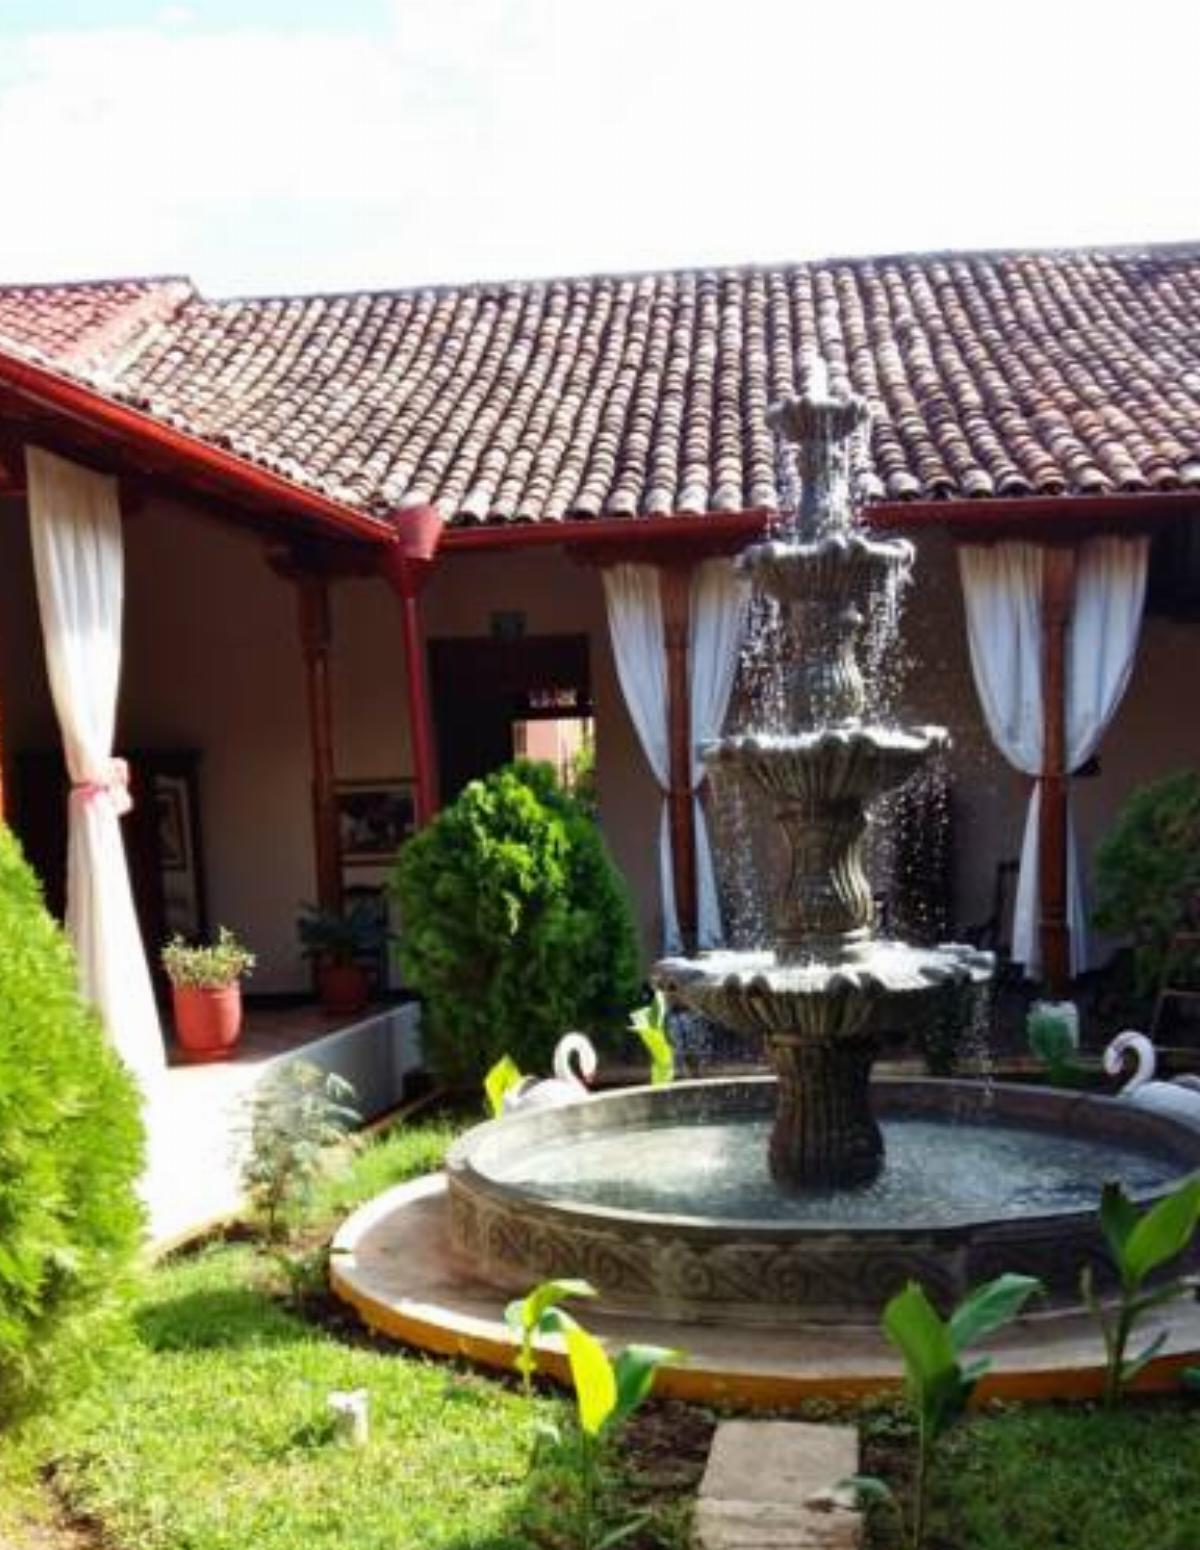 Guest House Los Corredores del Castillo Hotel Granada Nicaragua